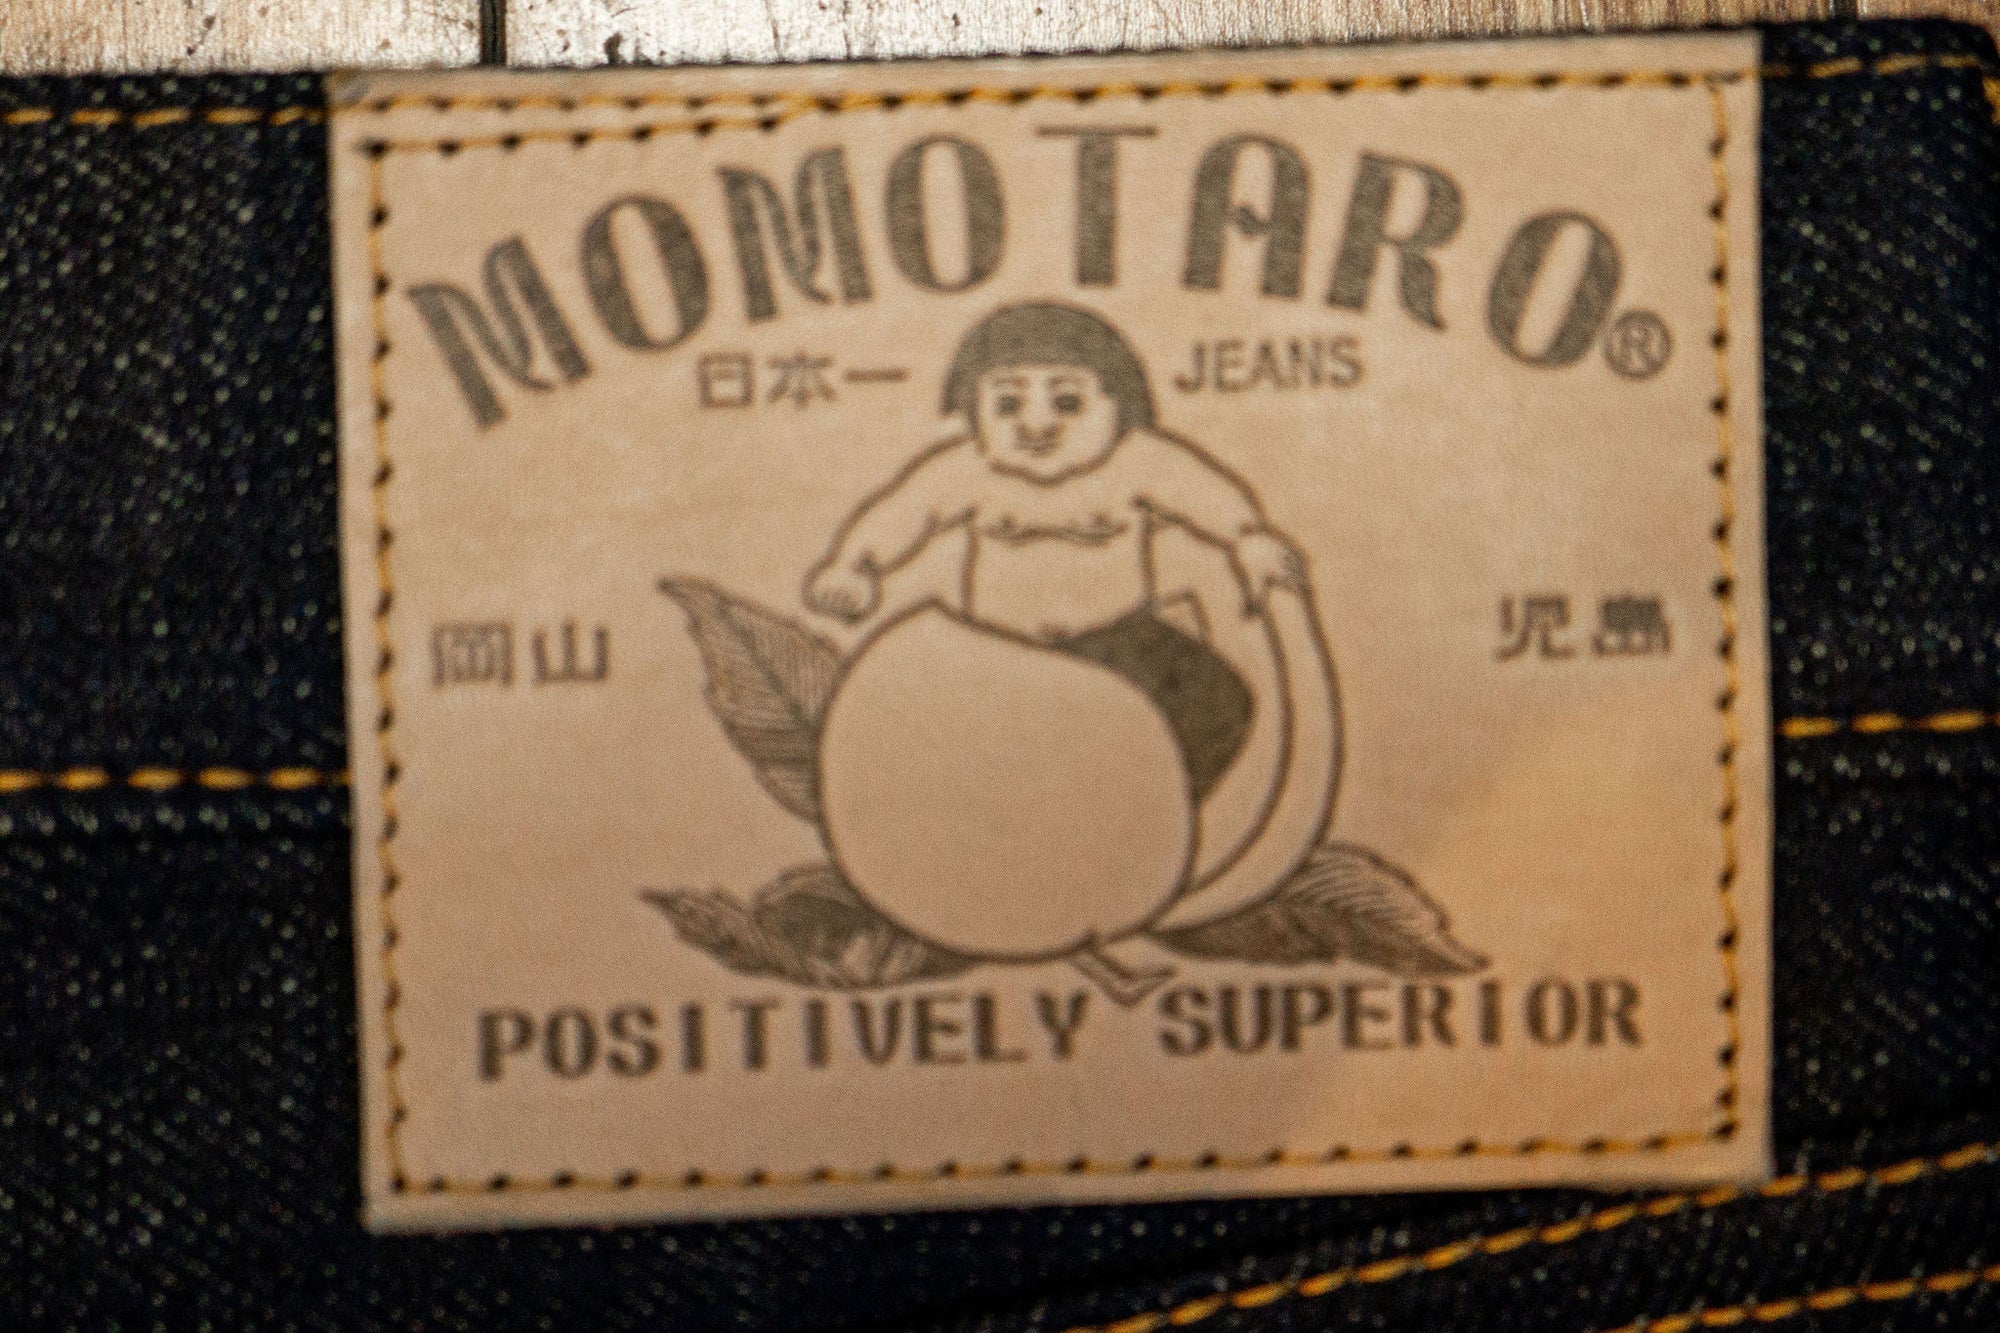 Momotaro 0306-BE Tight Tapered 18oz ID x Beige